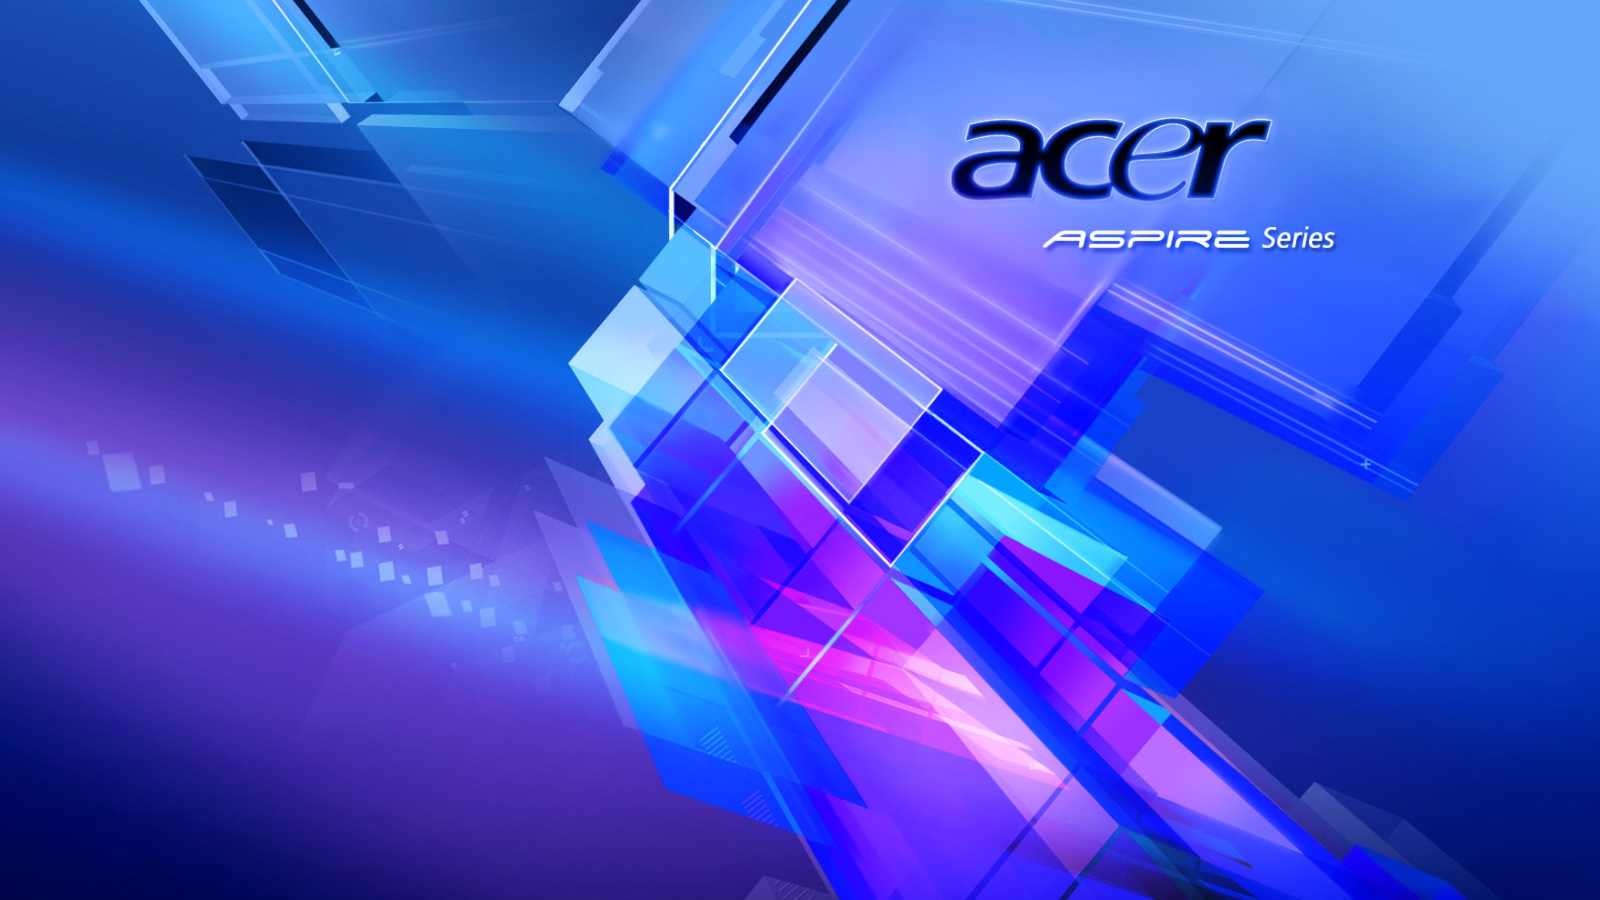 Fondo de pantalla Acer Aspire 1600x900